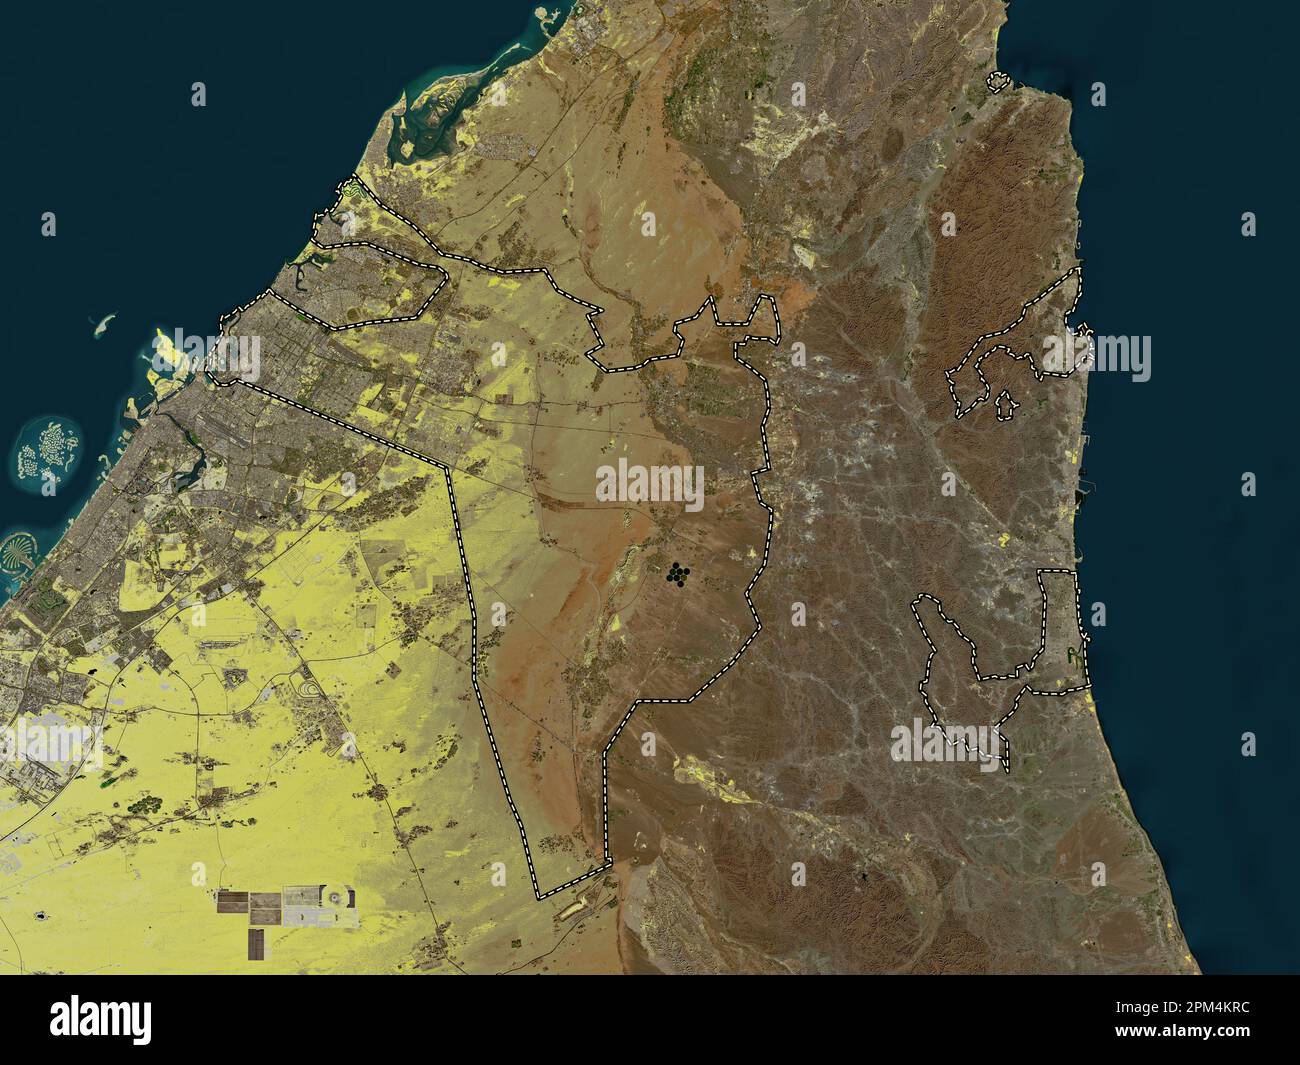 Sharjah, Emirat der Vereinigten Arabischen Emirate. Satellitenkarte mit niedriger Auflösung Stockfoto